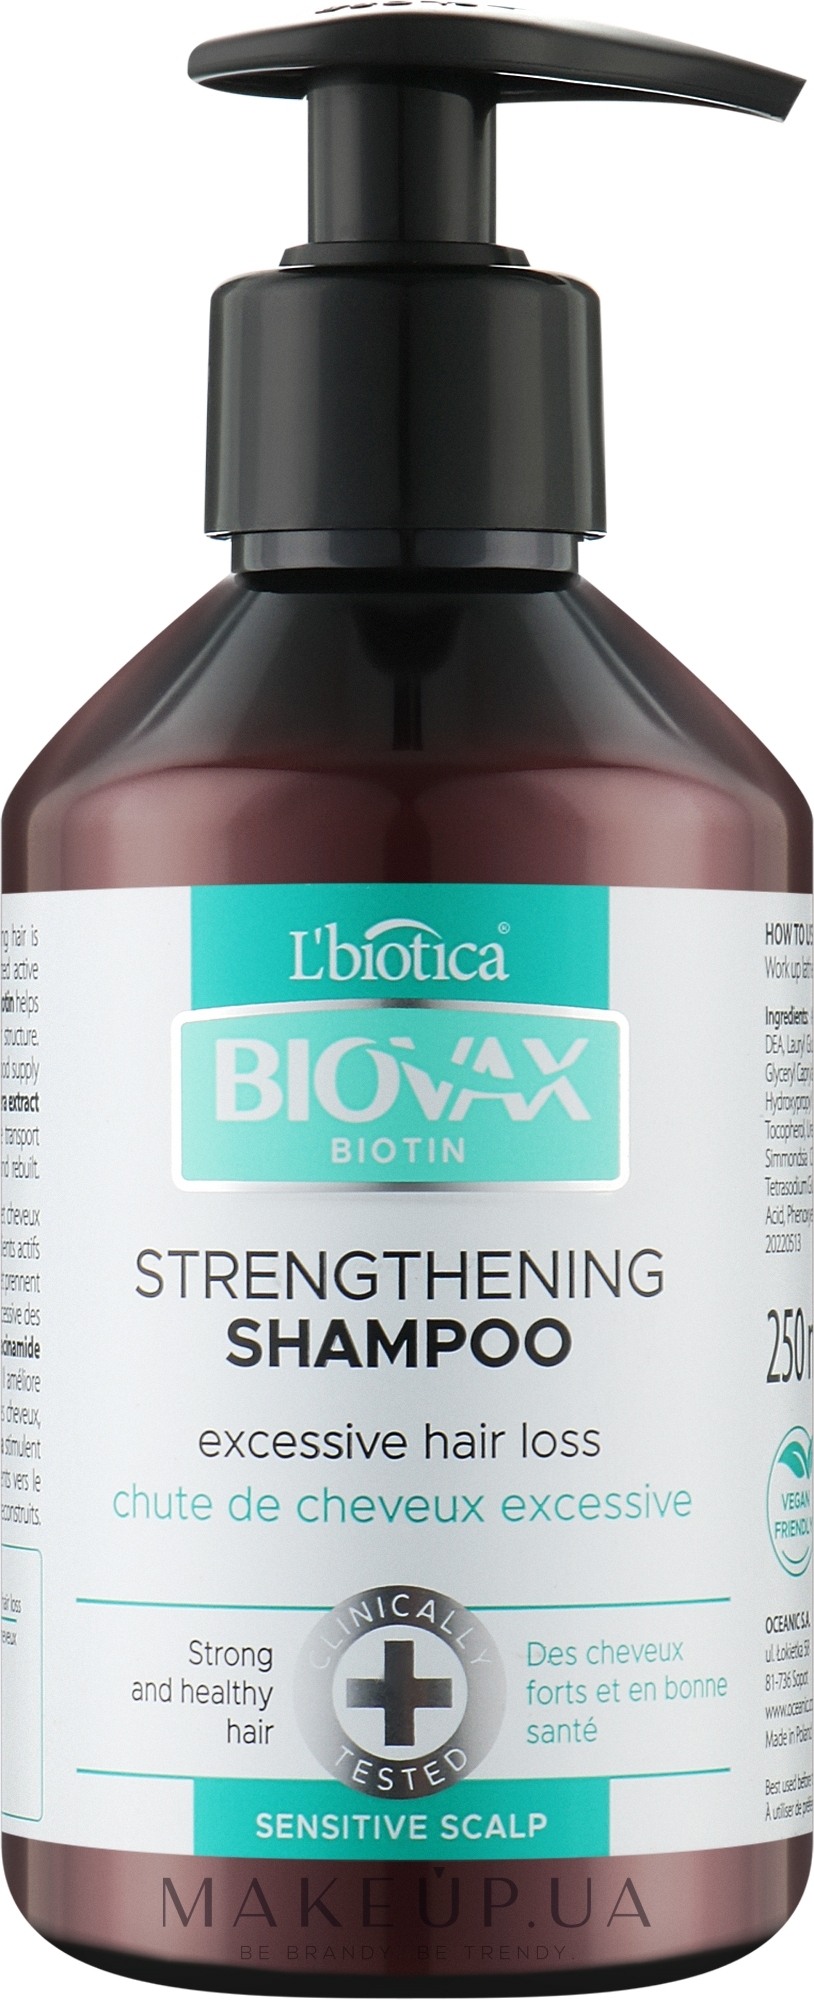 Стимулювальний зміцнювальний шампунь для волосся - Biovax Biotin Strengthening Shampoo — фото 250ml